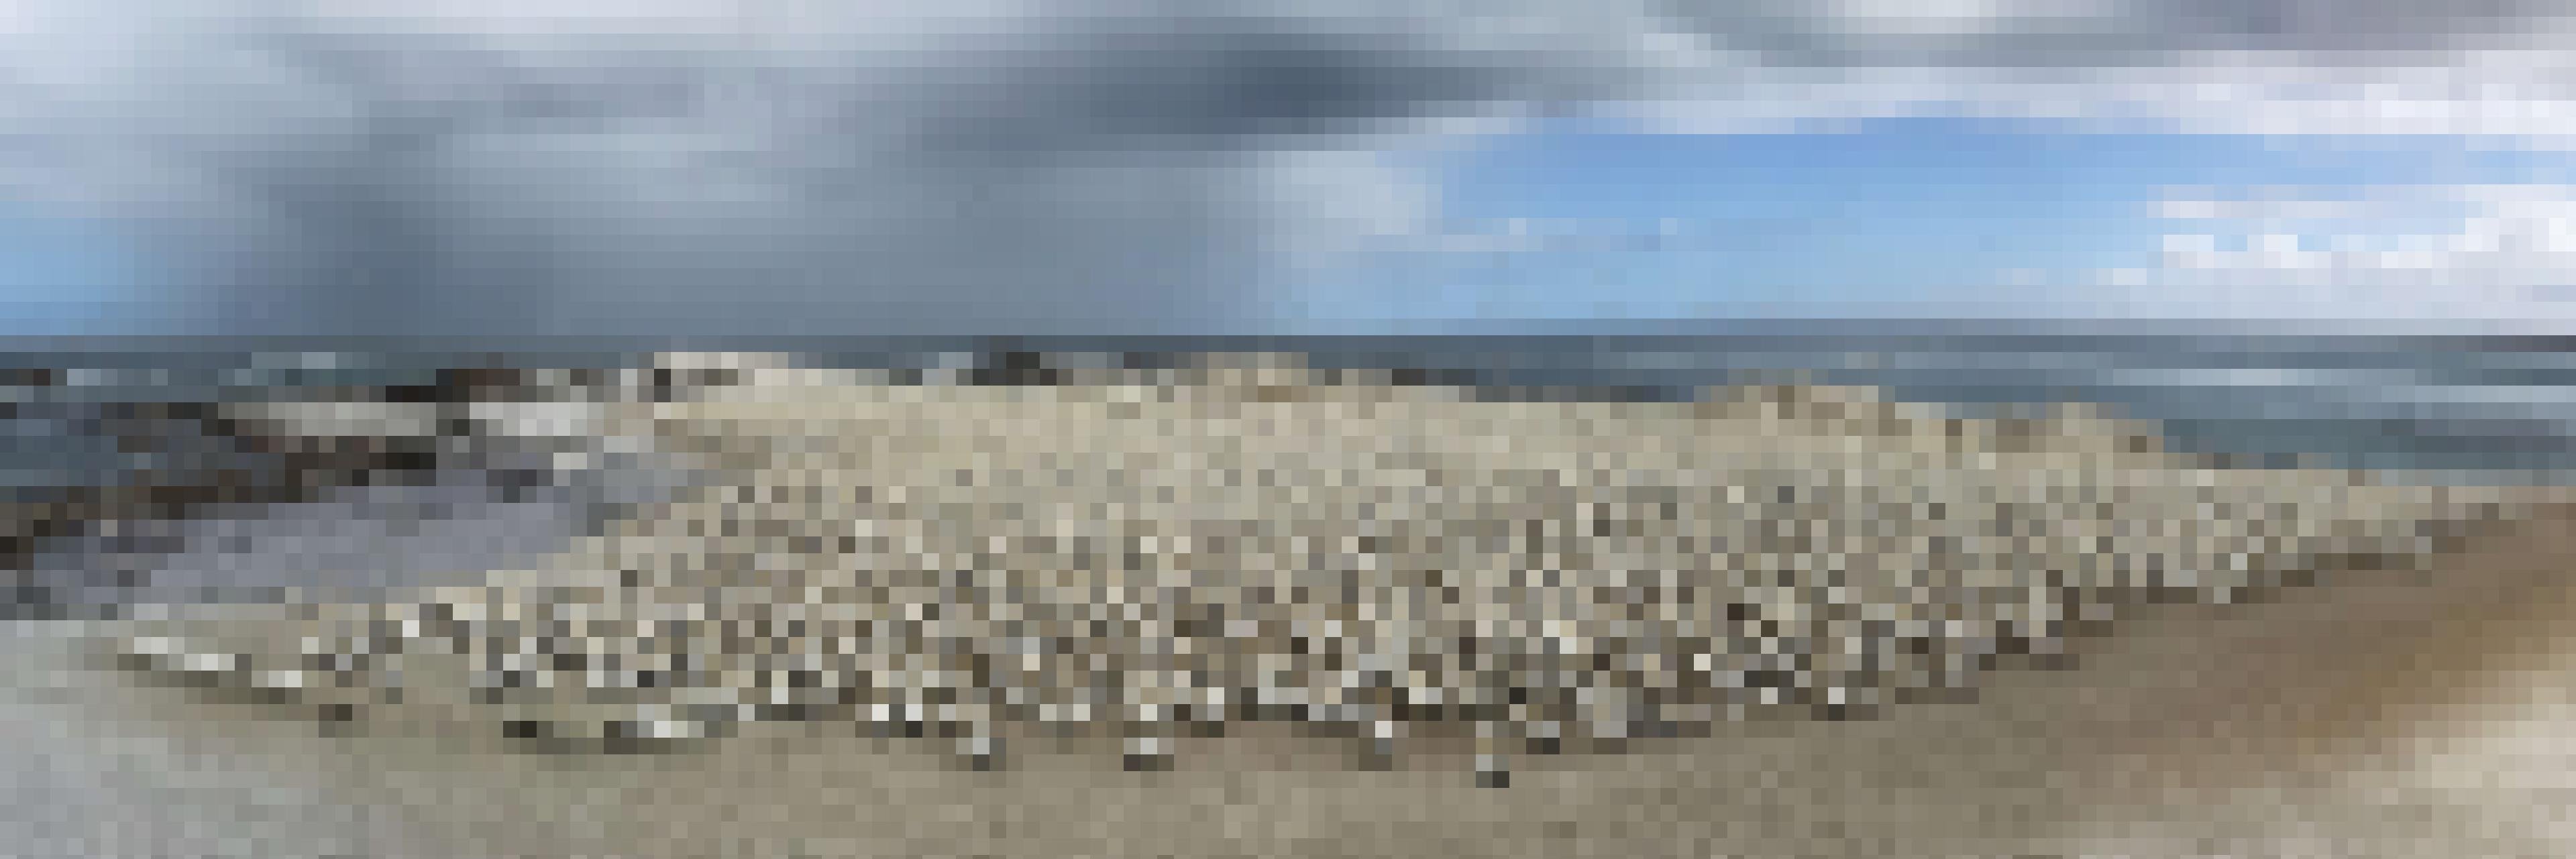 Panoramabild der Vogelkolonie auf Bird Island. Im Hintergrund sieht man einen Streifen mit dunkelgrauen Wolken, aus denen es regnet.